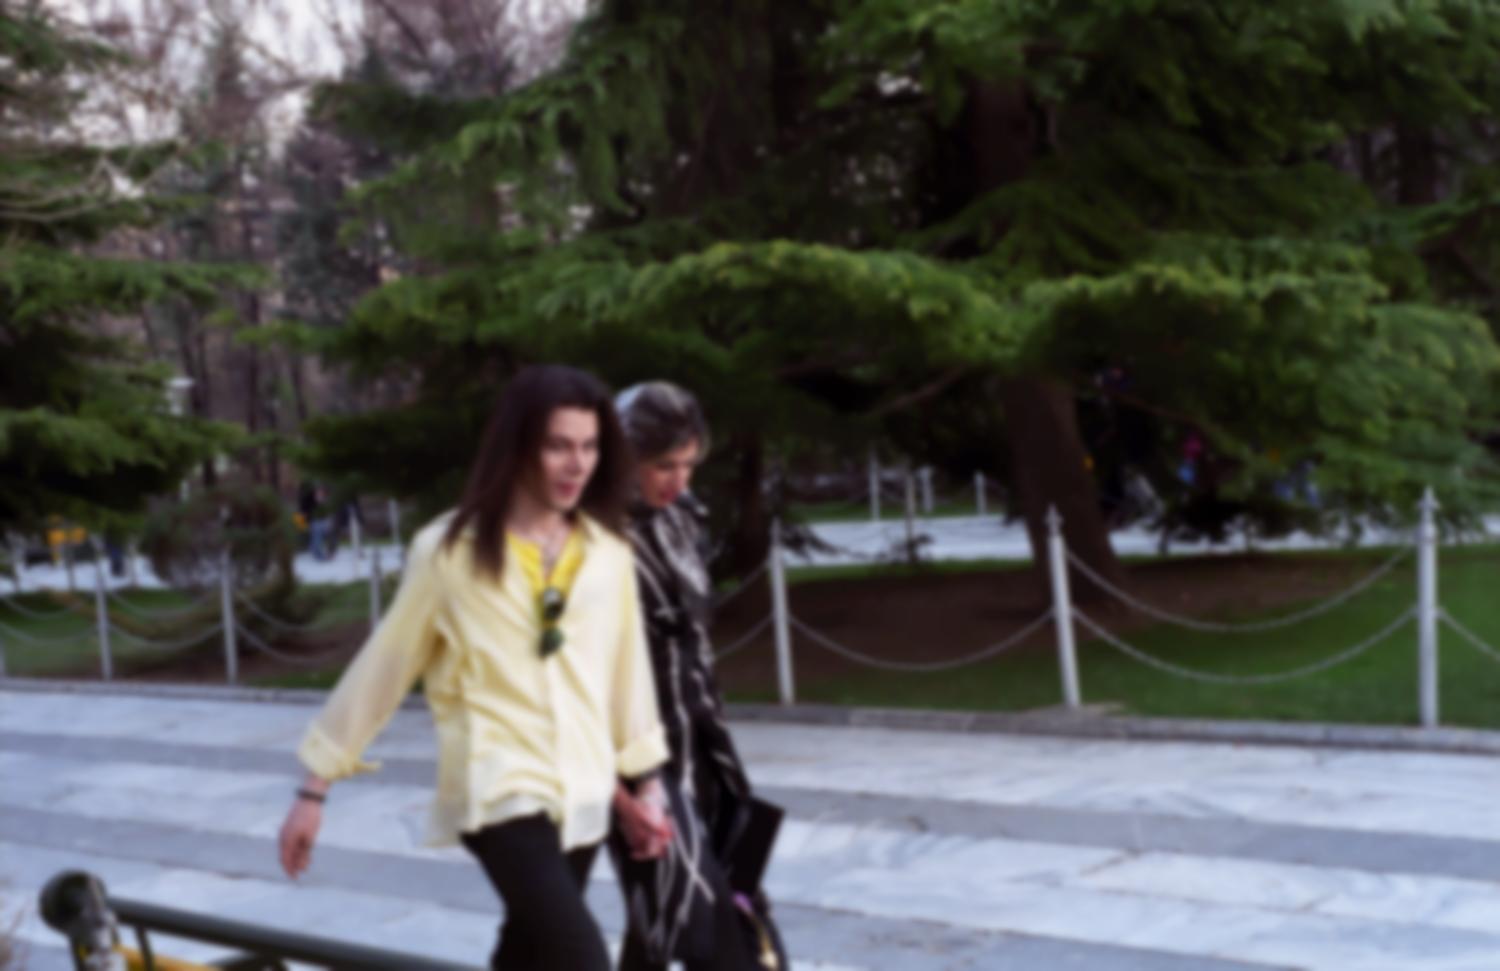 Couple branché au Park-e Mellat, le jeune homme a les cheveux longs et ressemble à Michael Jackson. Téhéran, Iran, mars 2007.